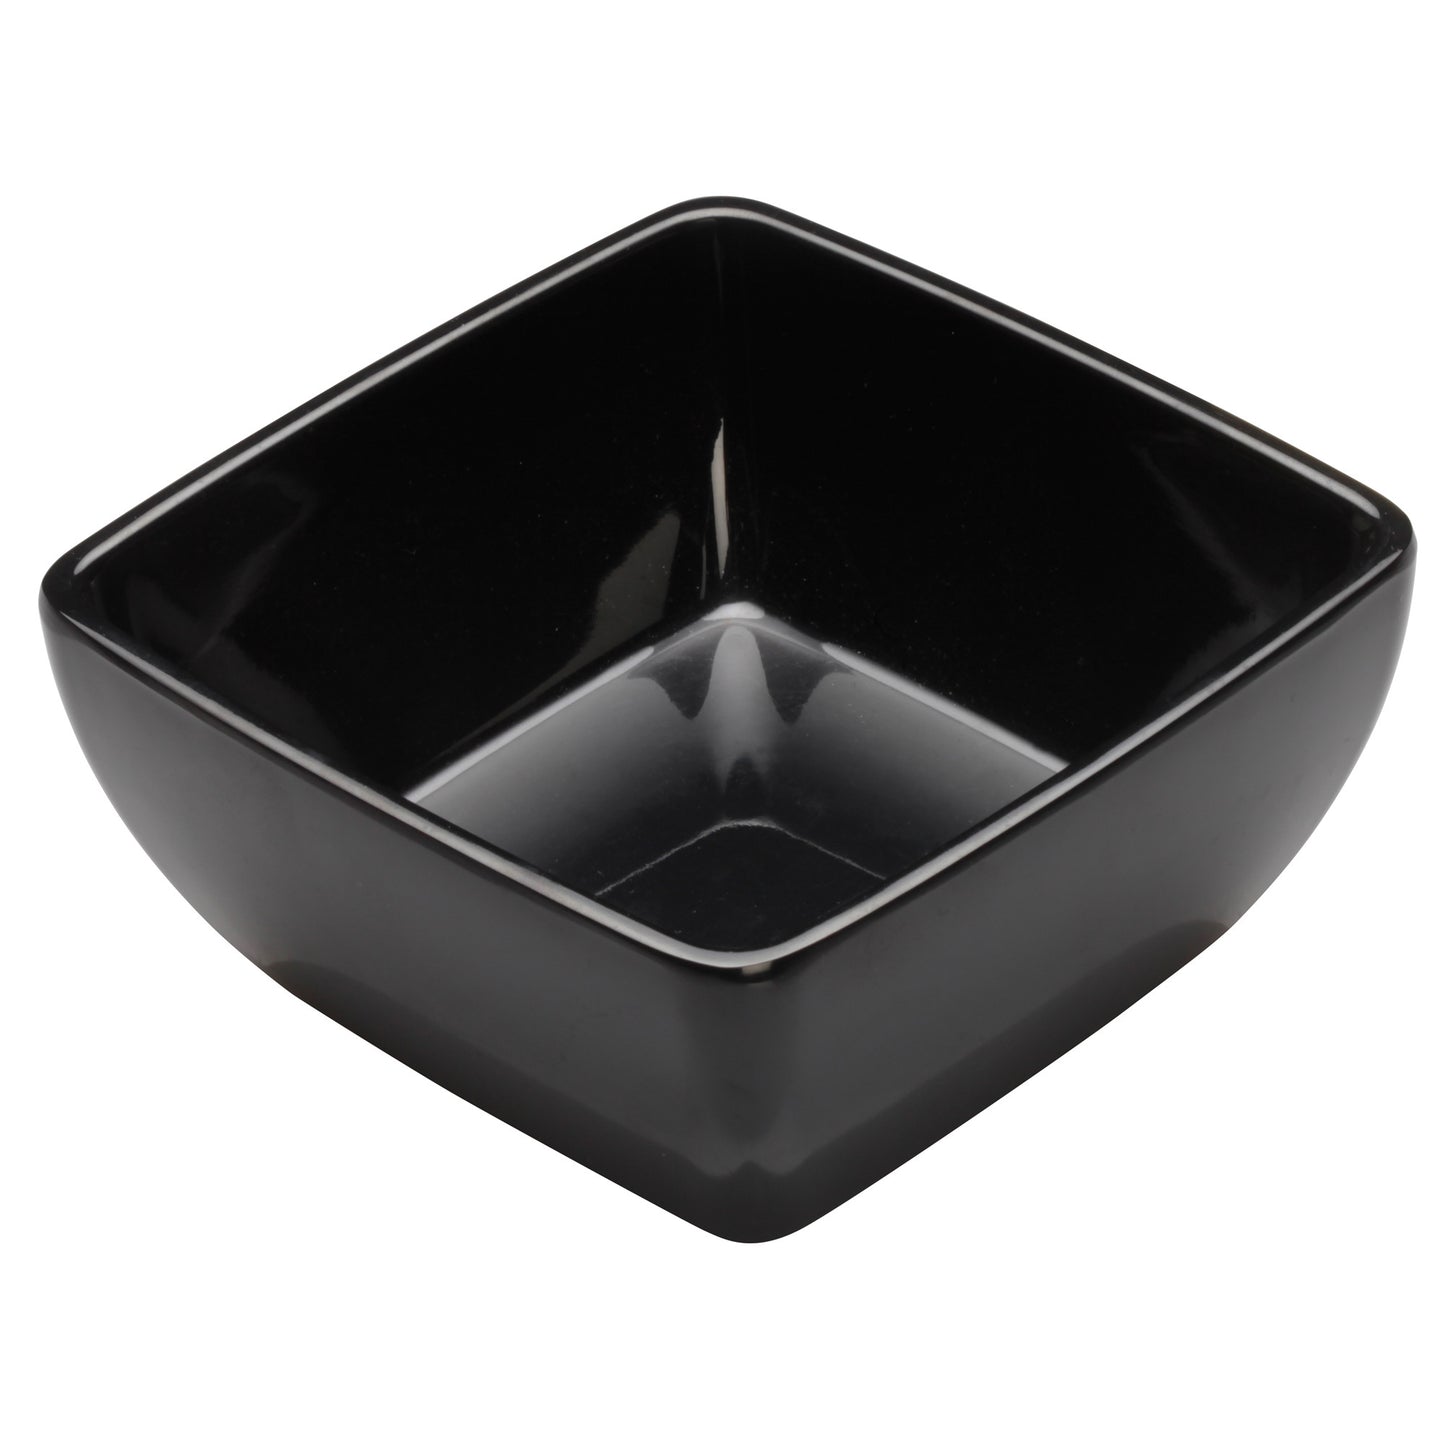 WDM009-303 - 5" Melamine Square Bowl, Black, 24pcs/case